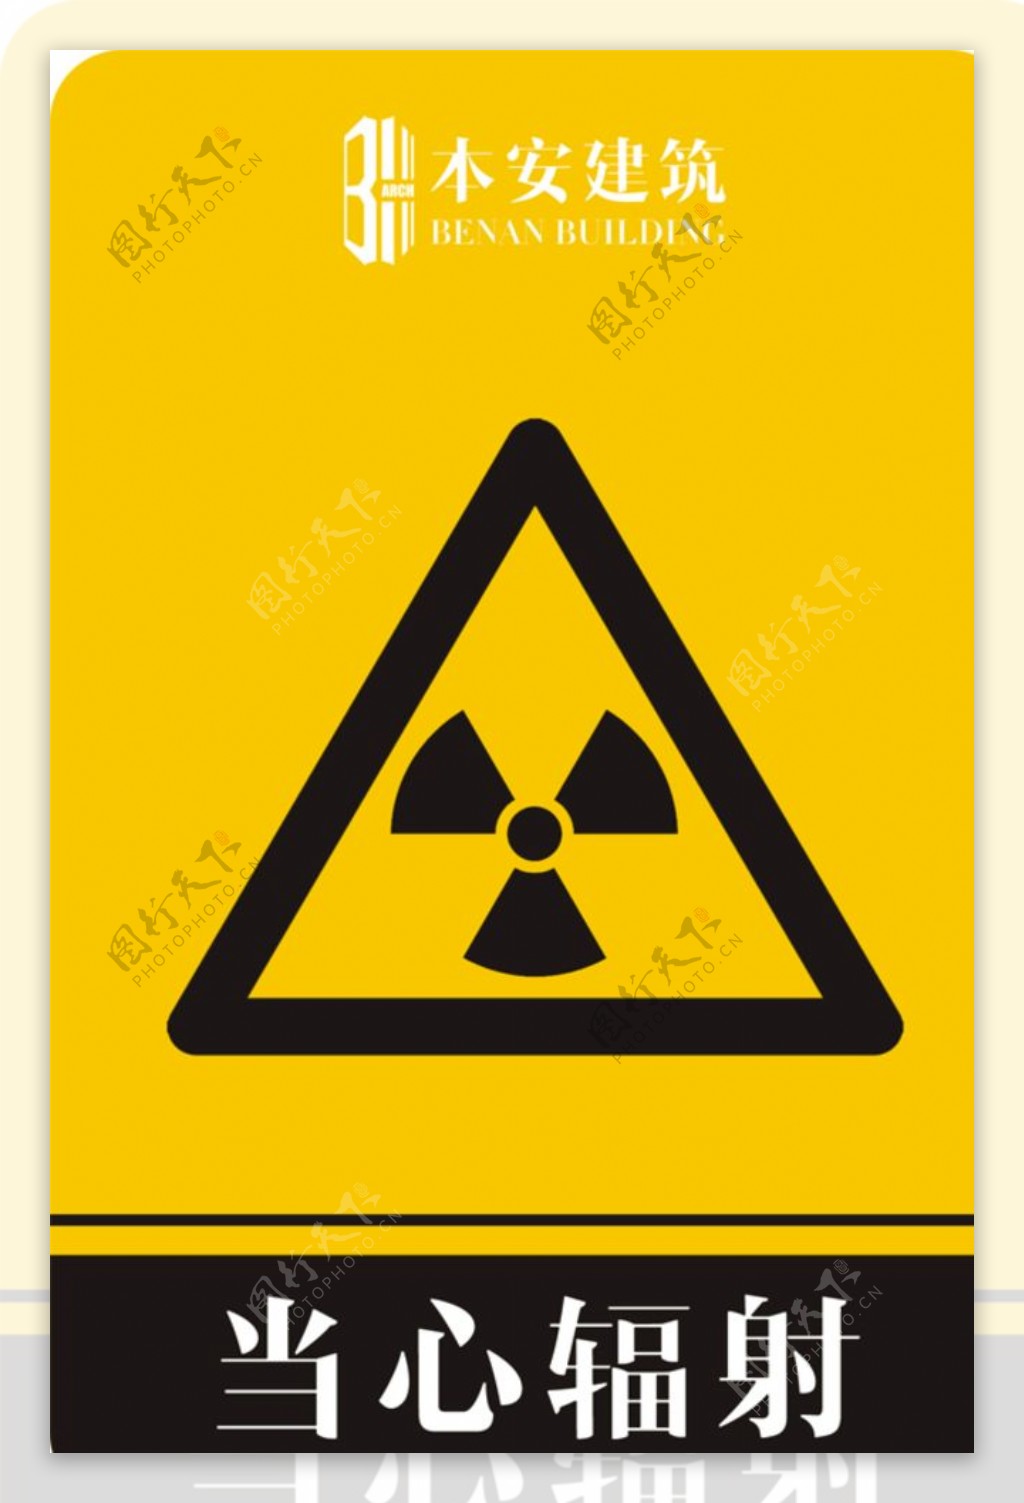 当心辐射警告标识